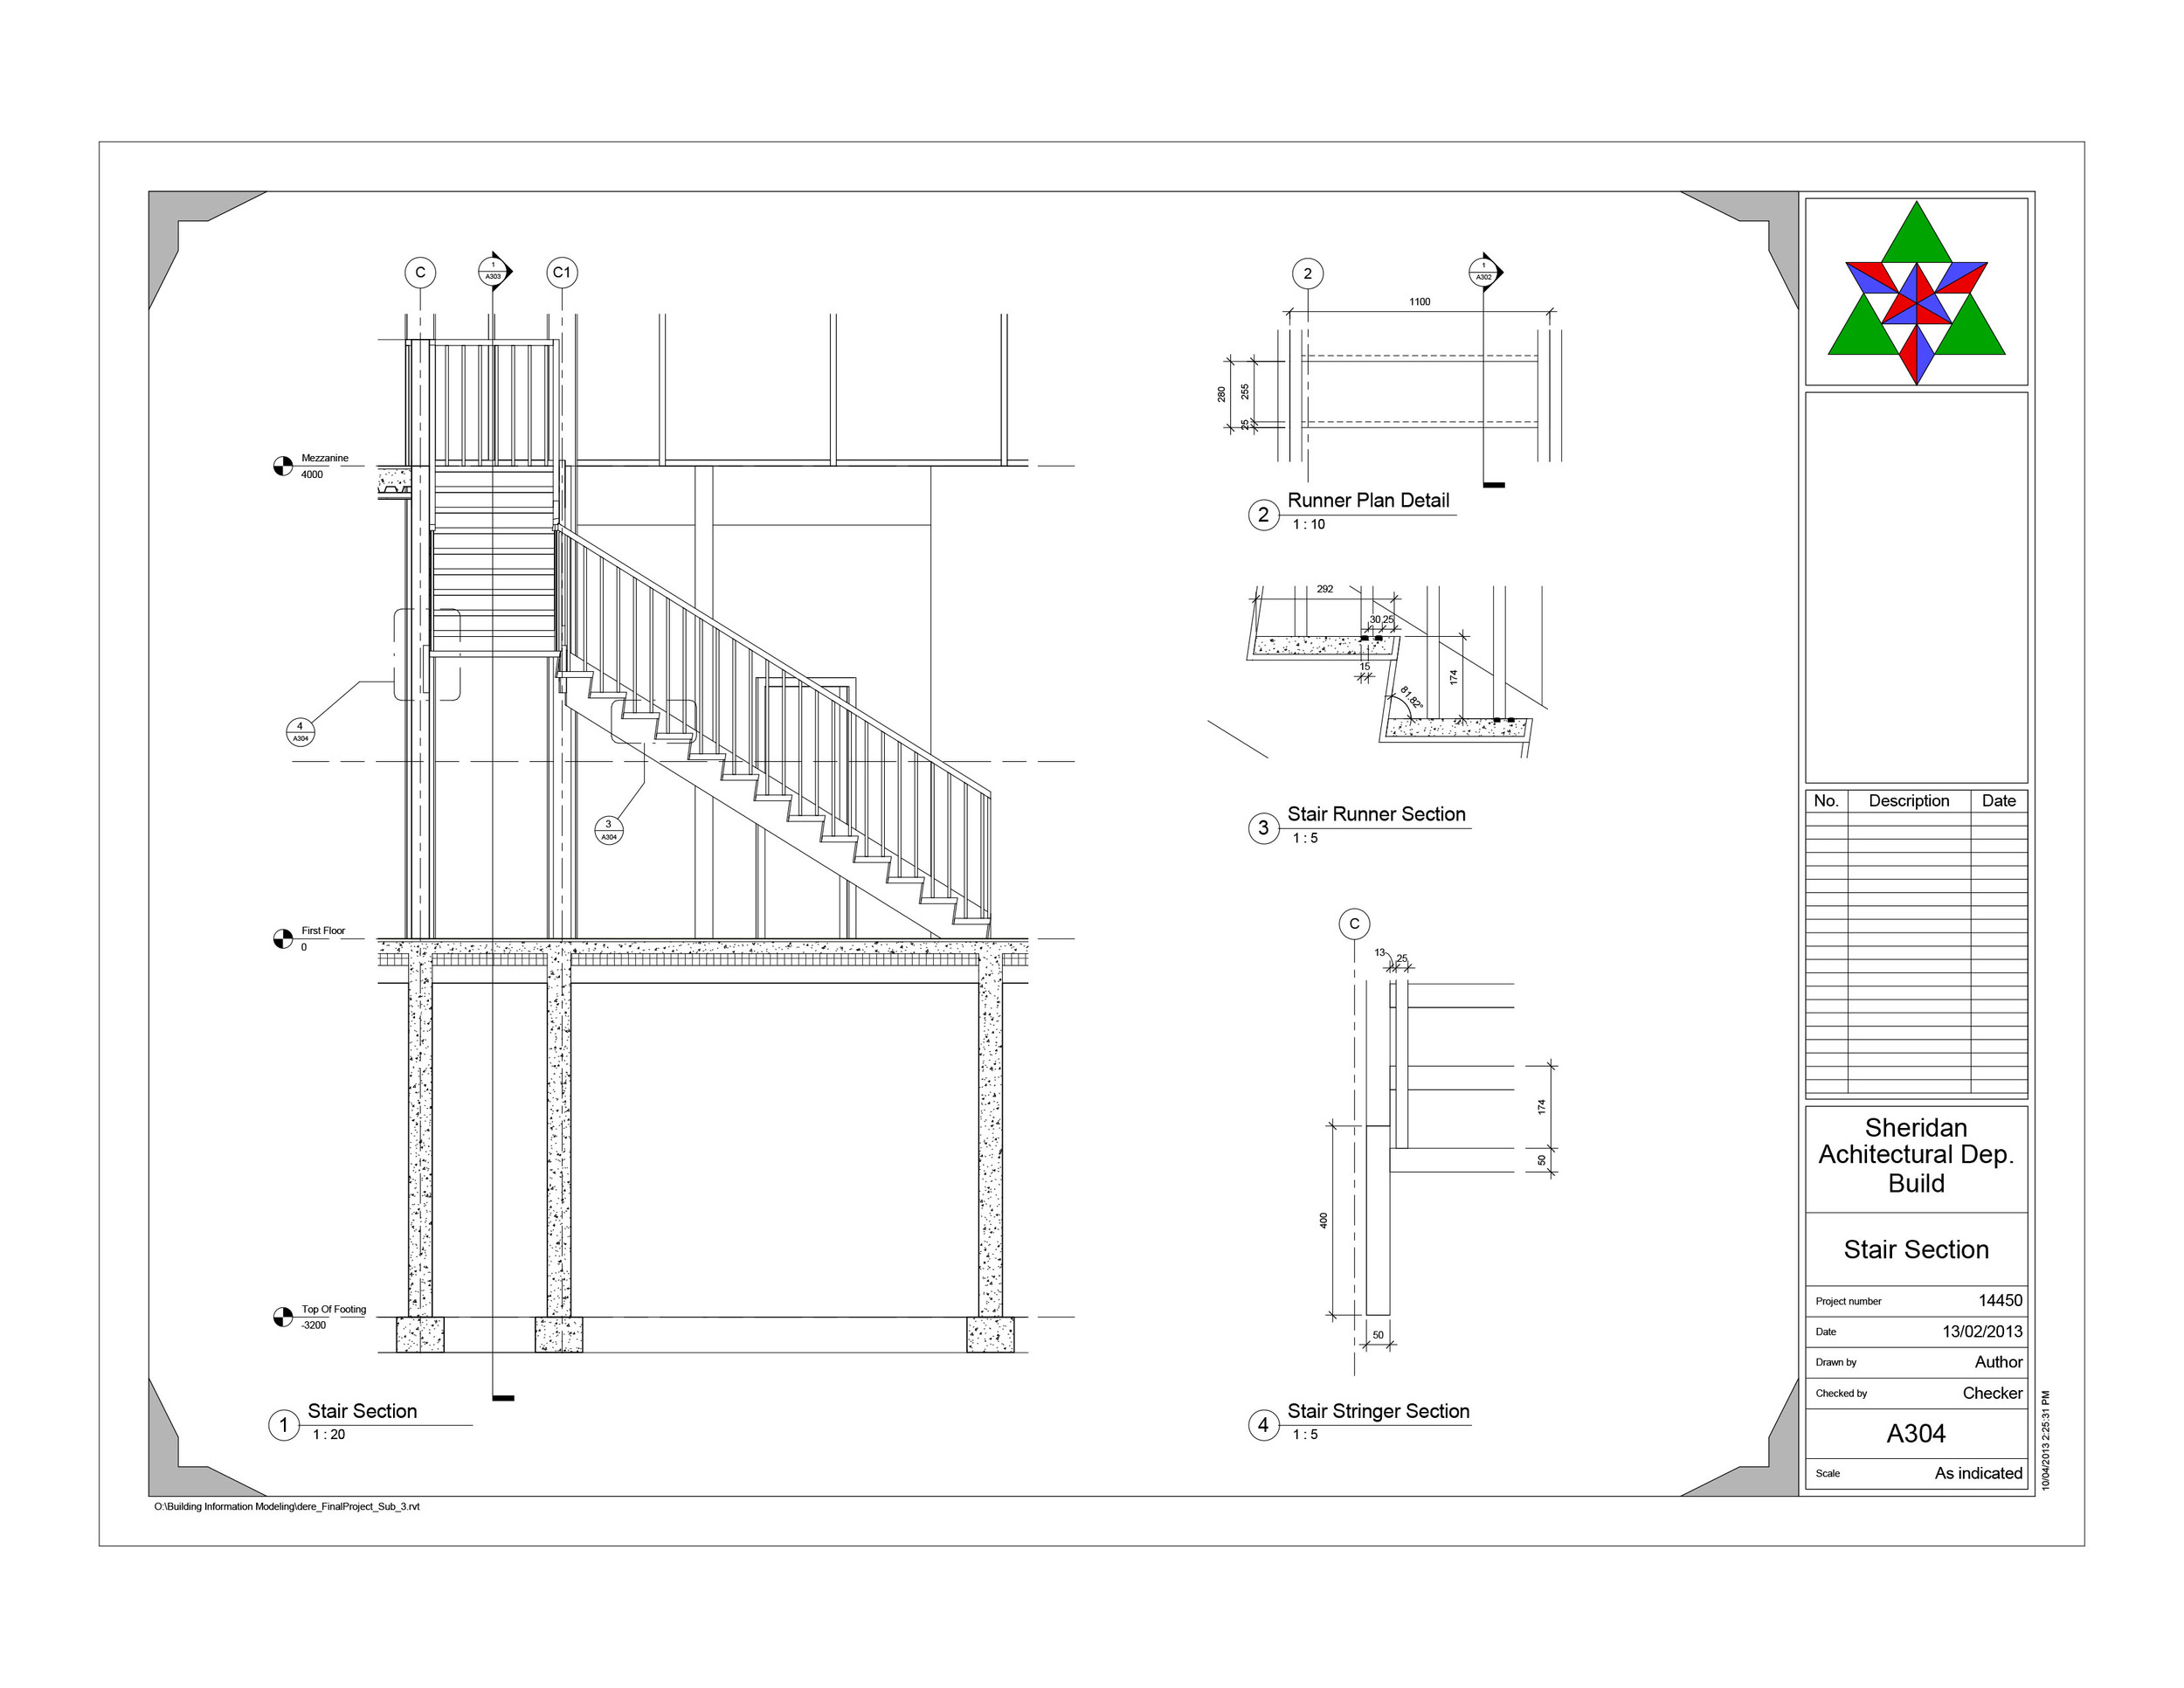 dere_FinalProject  - Sheet - A304 - Stair Section.jpg